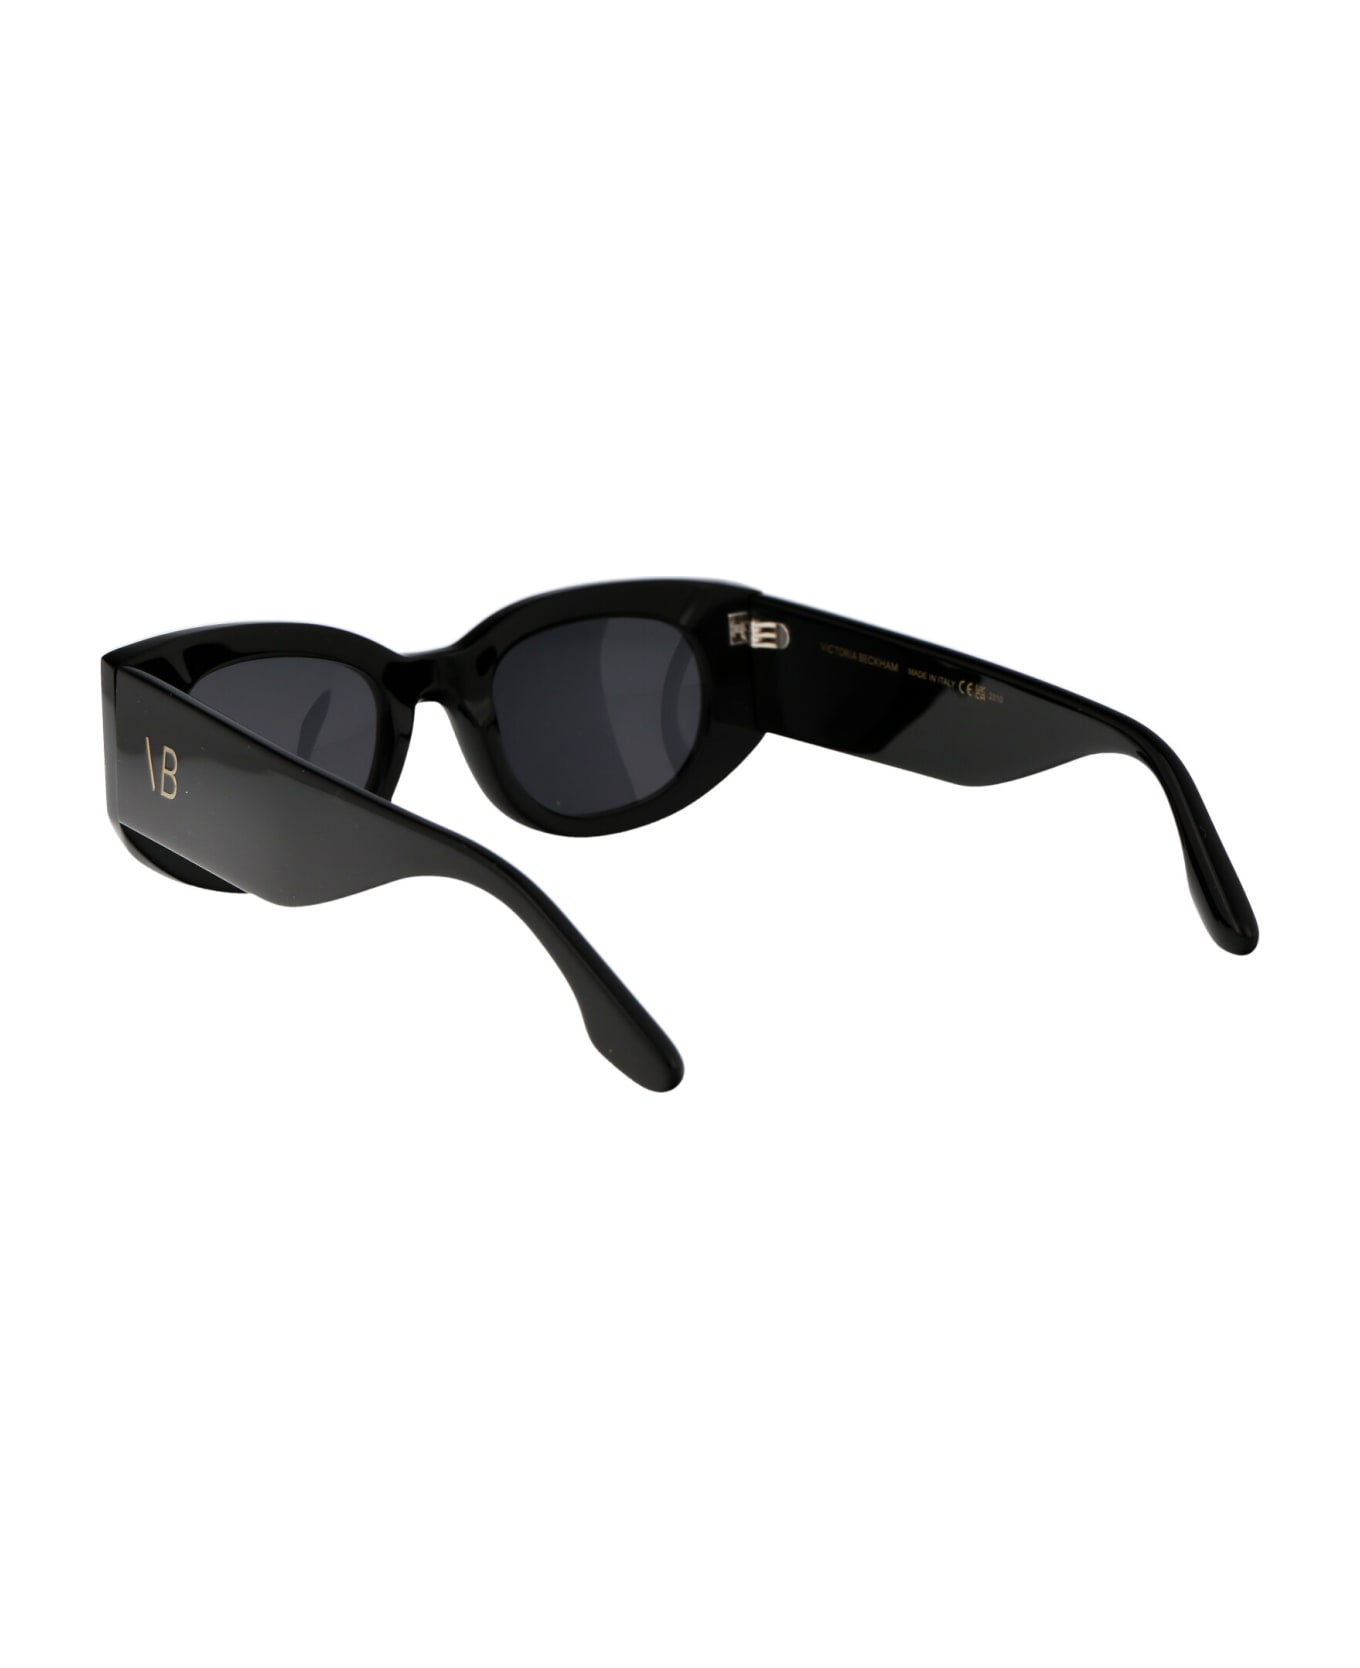 Victoria Beckham Vb654s Sunglasses - 001 BLACK